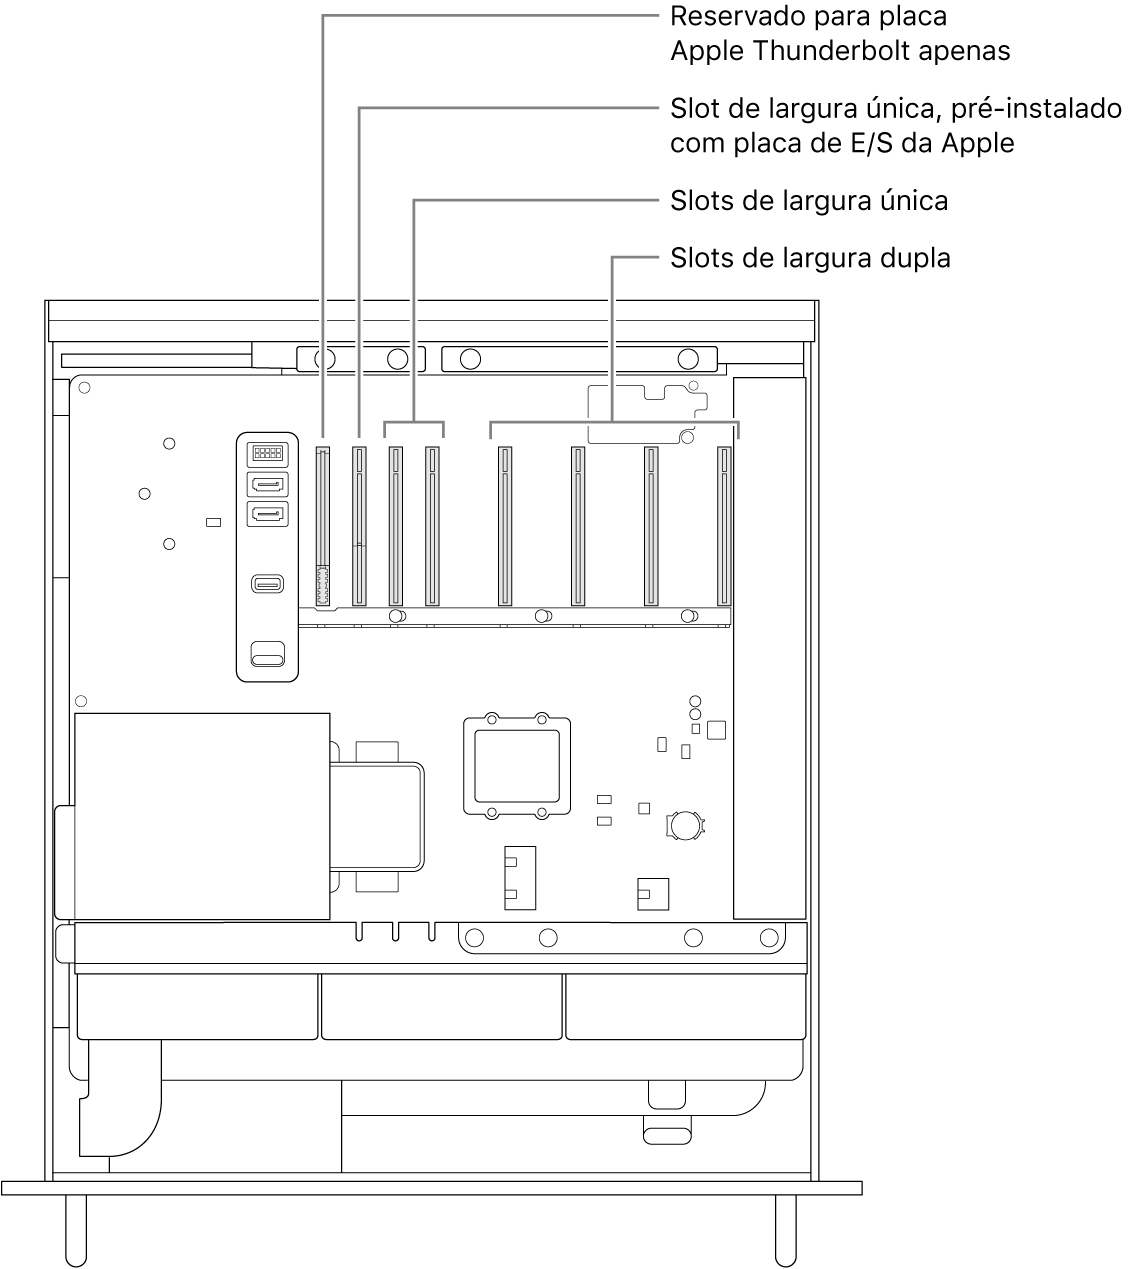 Lateral do Mac Pro aberta, com chamadas mostrando a localização do slot da placa de E/S Thunderbolt, do slot de largura simples para a placa de E/S da Apple, dos dois slots de largura simples e dos quatro slots de largura dupla.